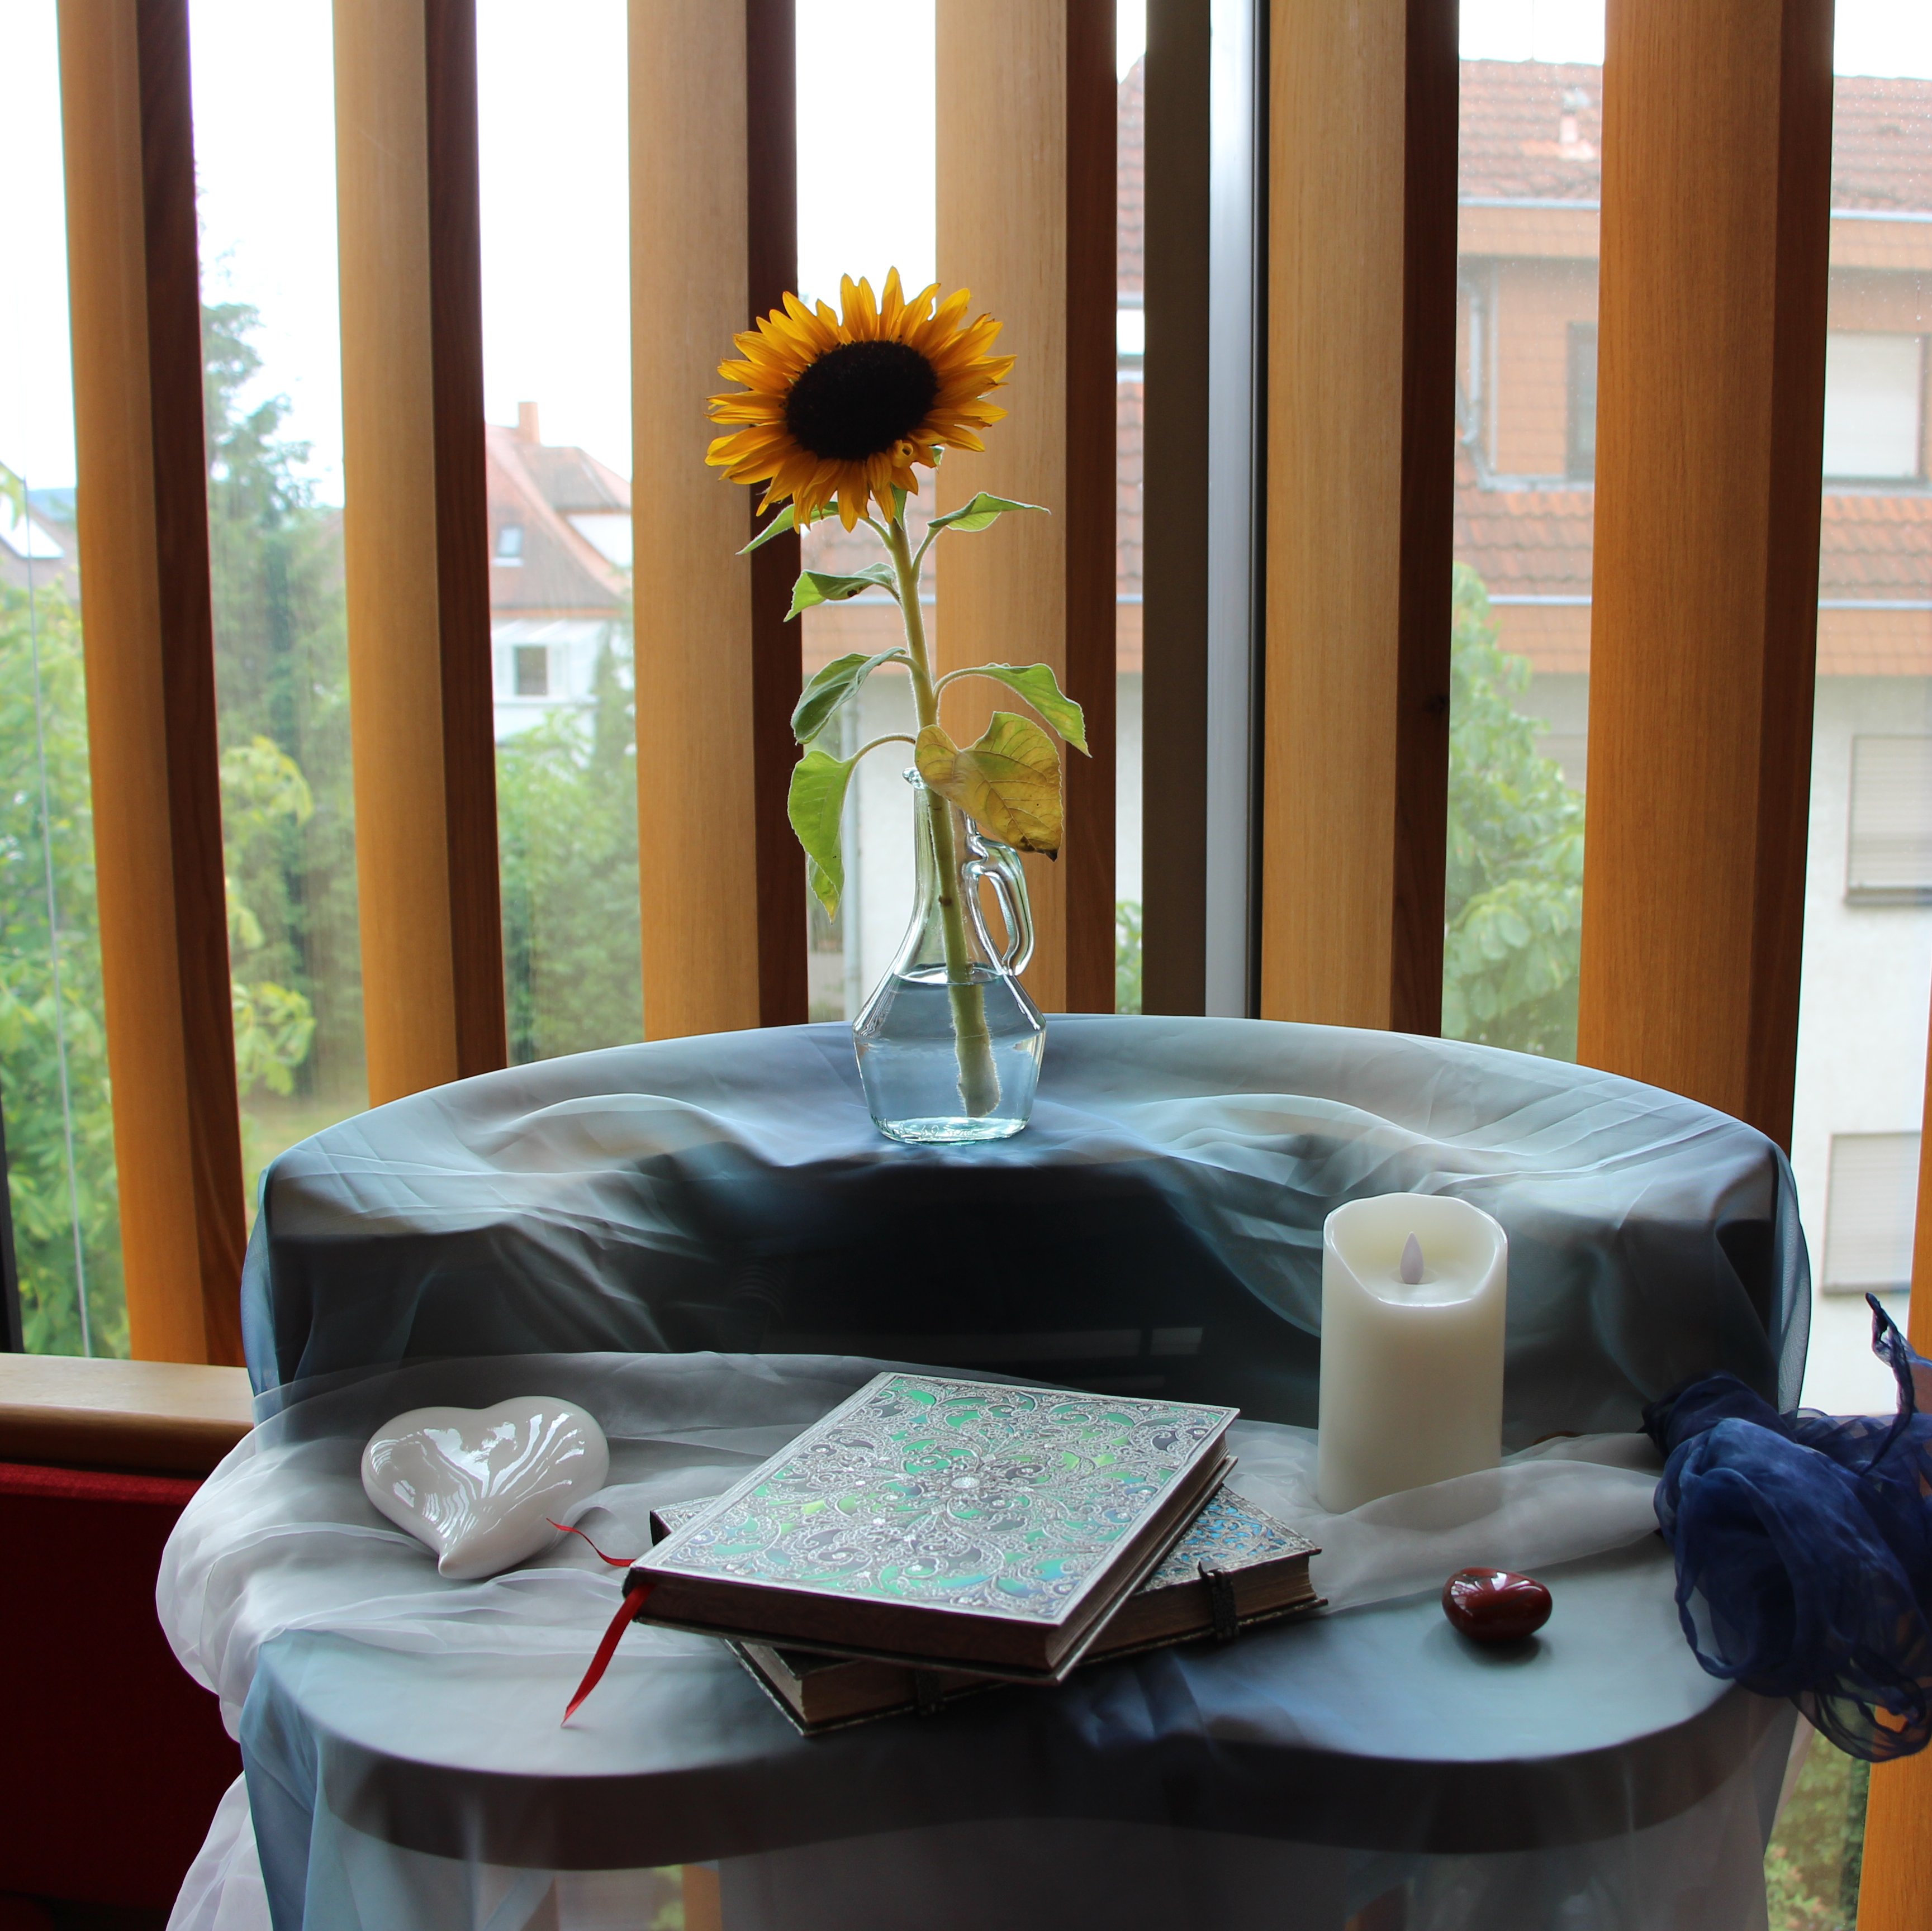 Ein runder hoher Tisch, auf dem farbenfrohe Bücher und Dekogegenstände wie Porzellanherzen, eine Kerze und eine Sonnenblume in einer Vase liegen bzw. stehen.